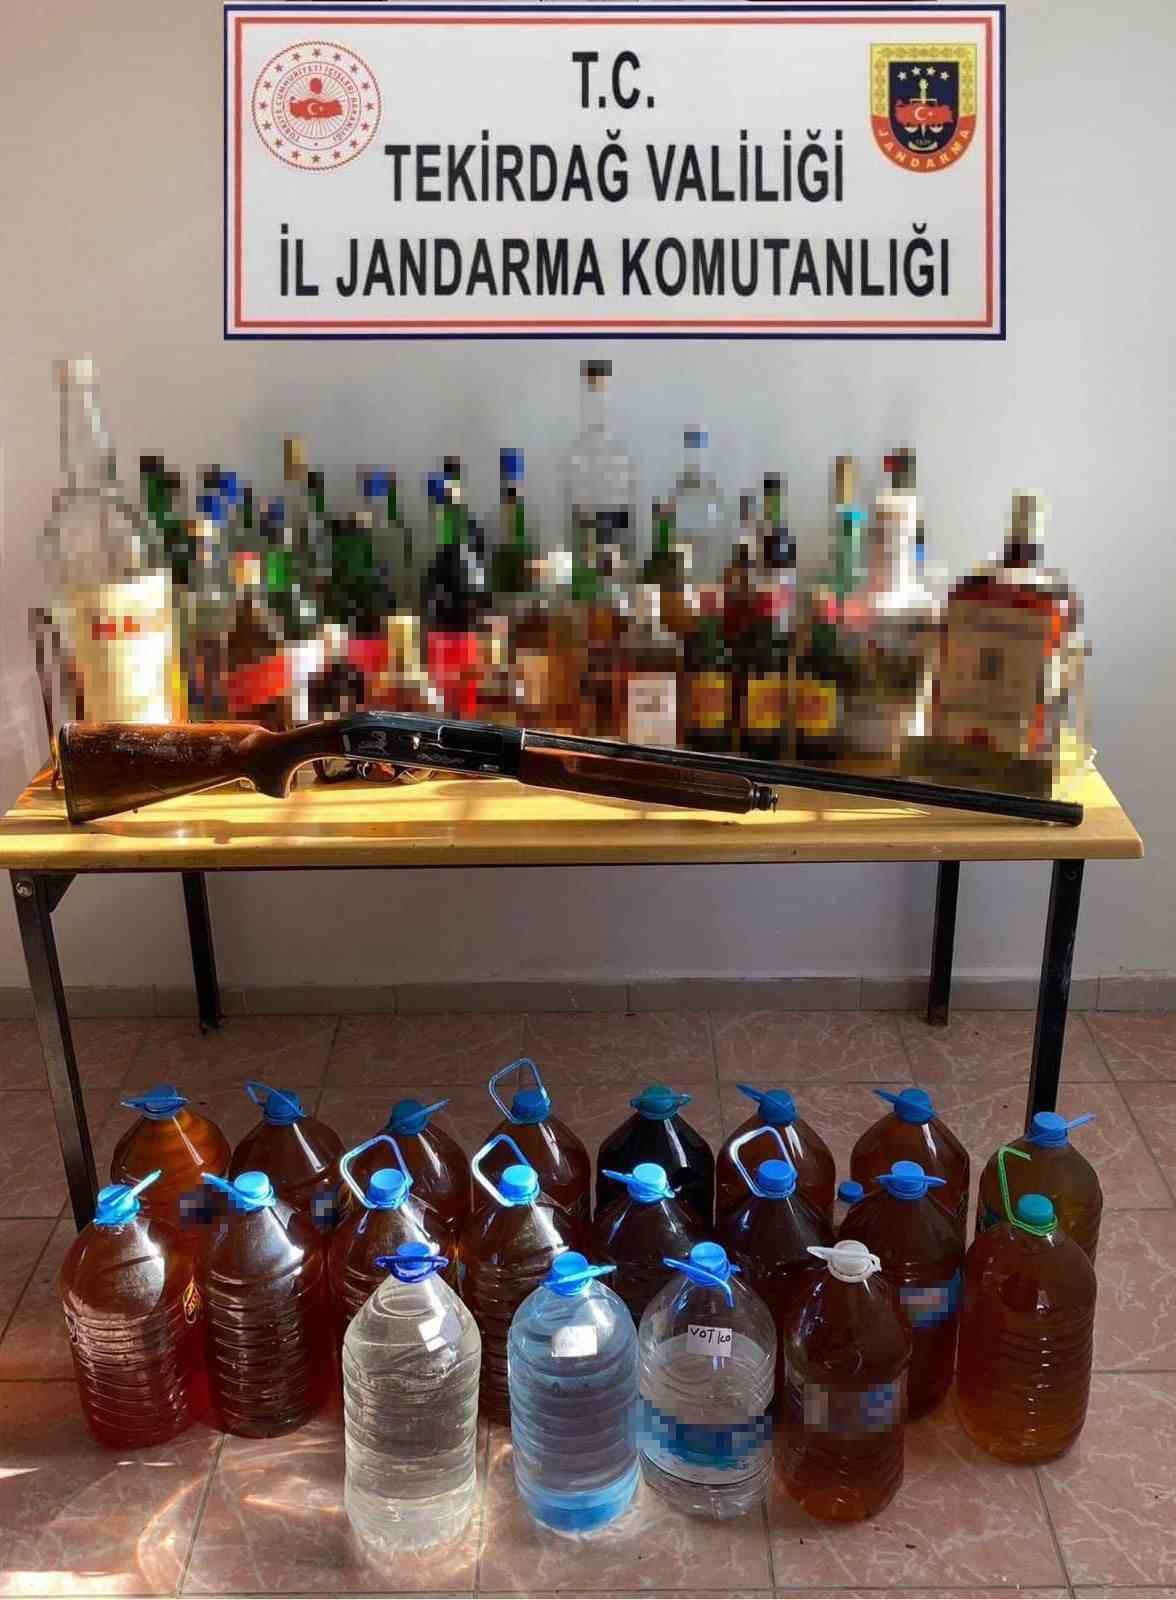 Sarköy’de Yakalanan 177 Litre Sahte İçki Sayısı Şaşırttı